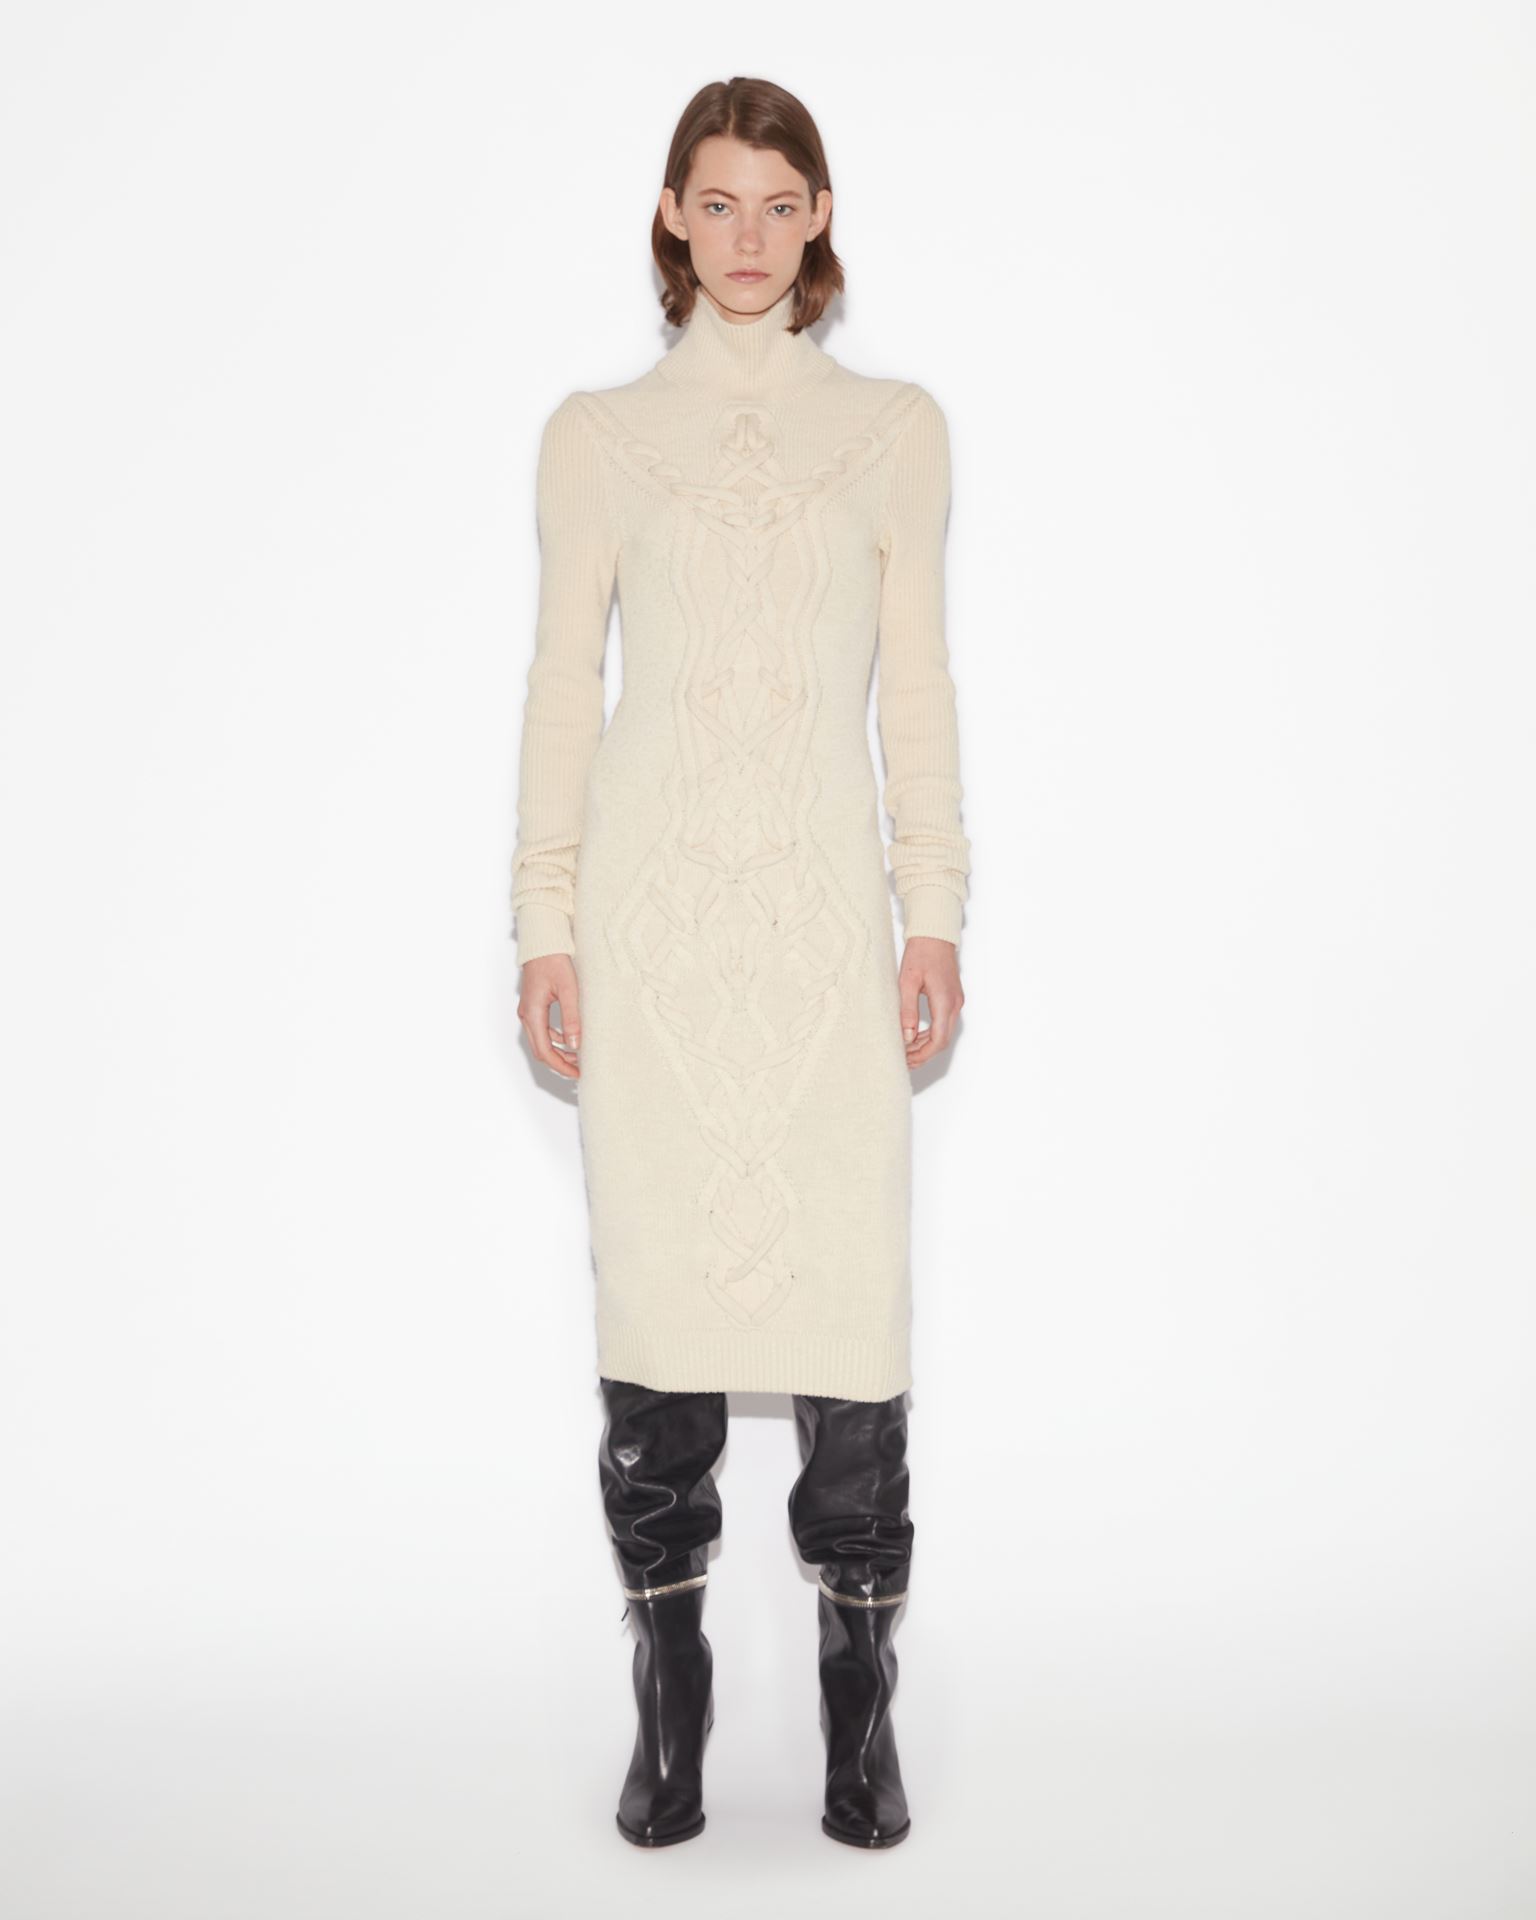 Isabel Marant, Adrienne Wool Dress - Women - White